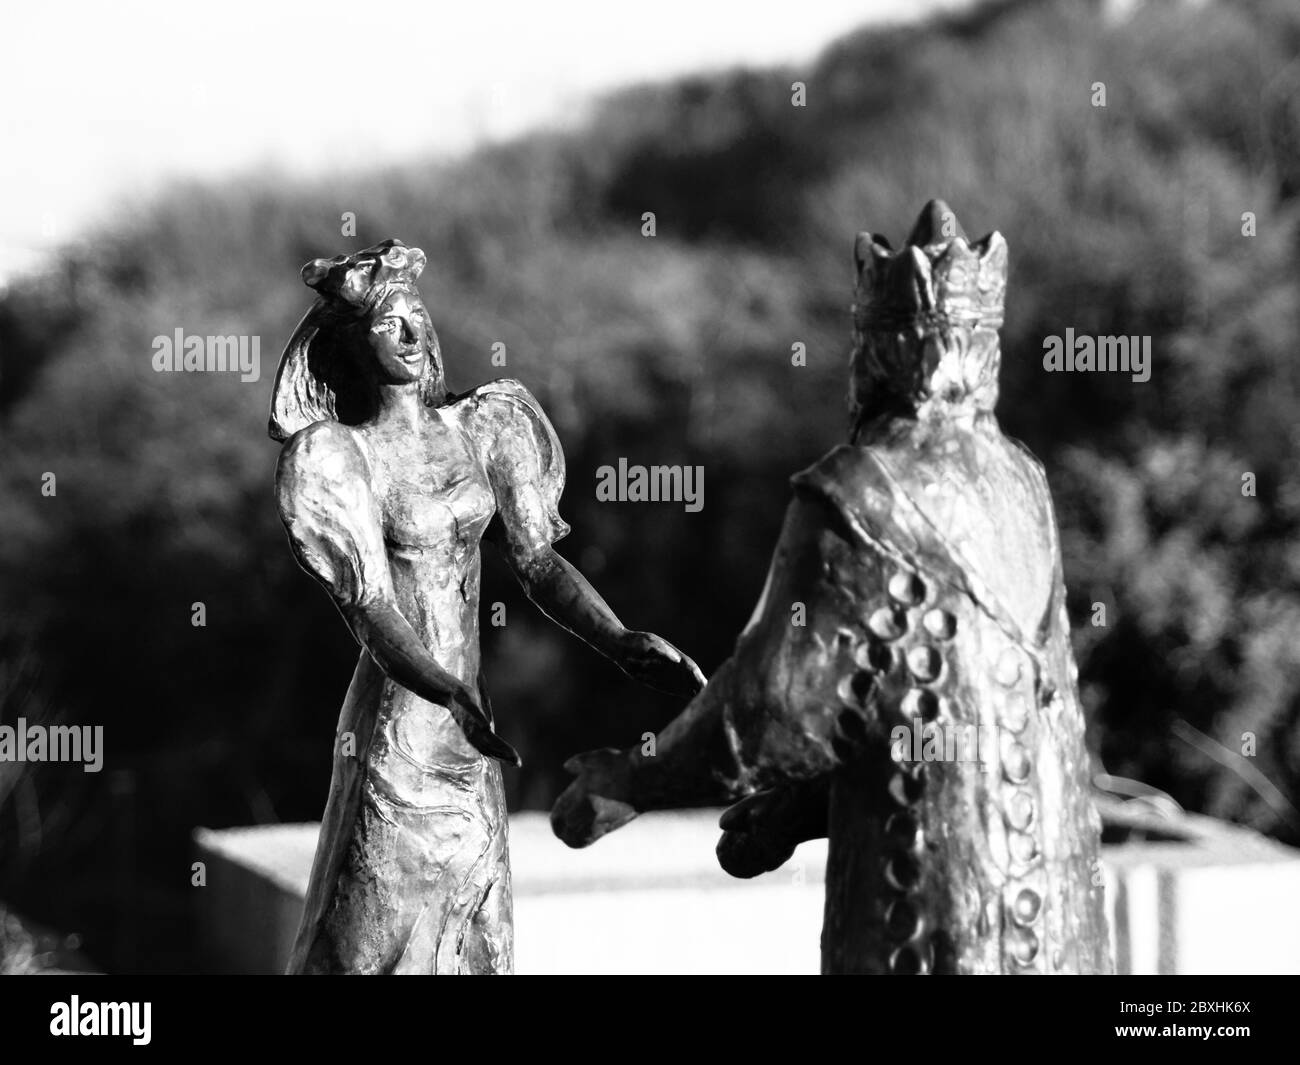 BUDAPEST, HONGRIE - 3 DÉCEMBRE 2016 : statue en bronze du roi Buda et de la reine Pest sur la colline Gellert, Budapest, Hongrie. Image en noir et blanc. Banque D'Images